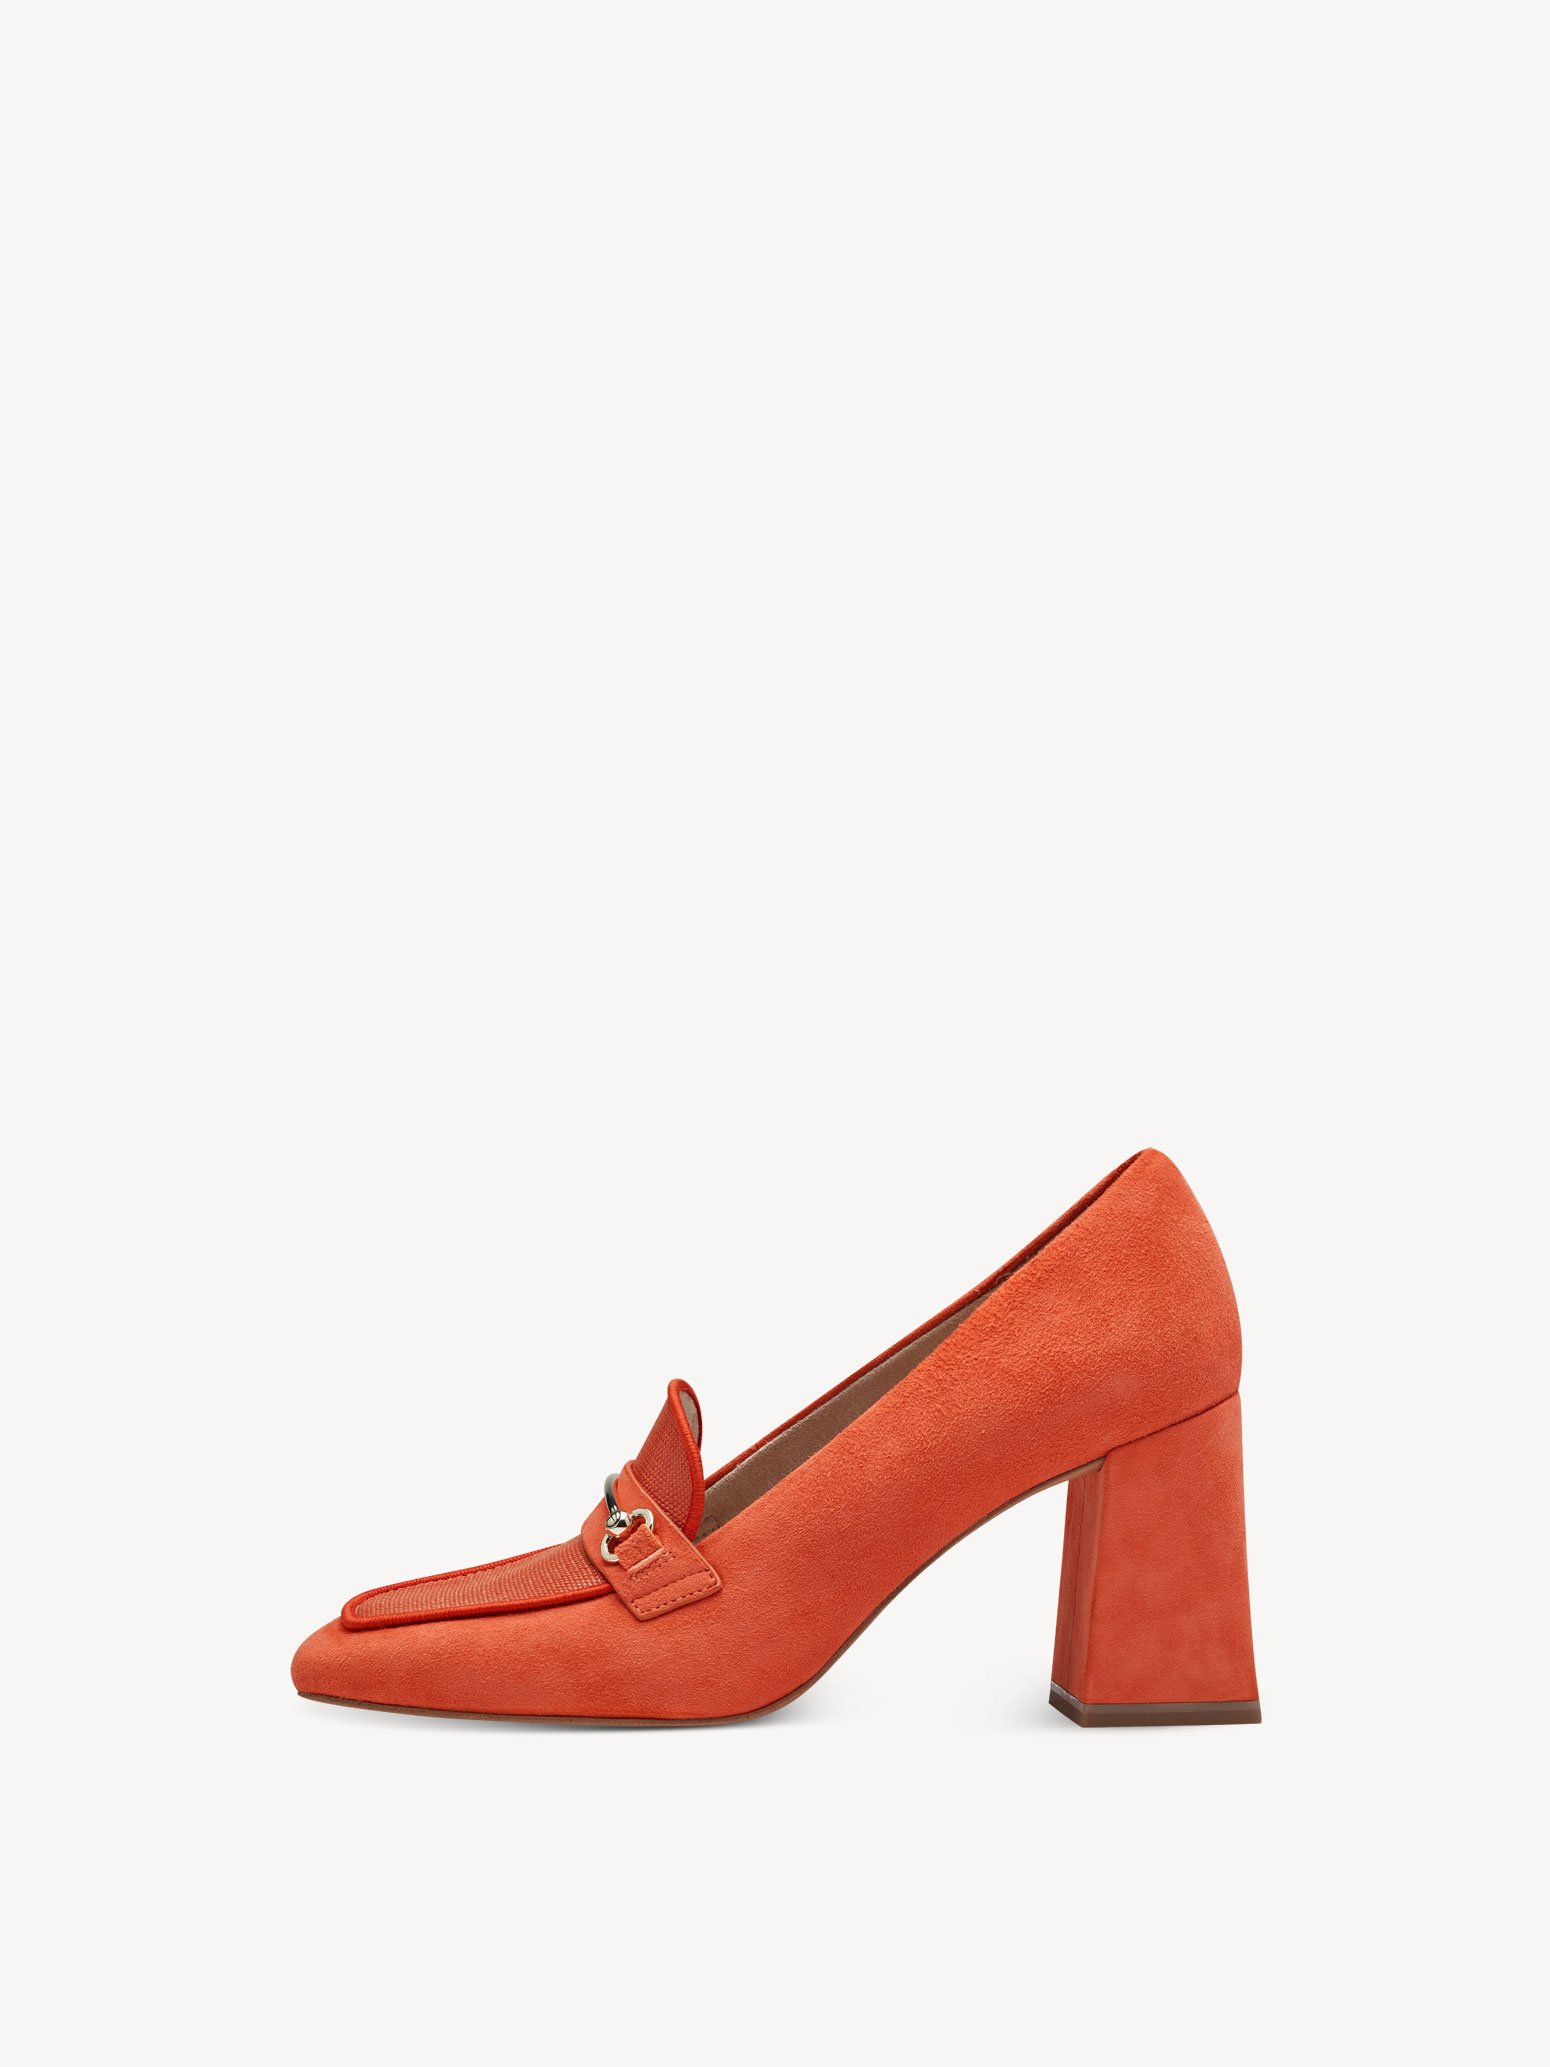 Ελαφρά παπούτσια περιπάτου - πορτοκαλί